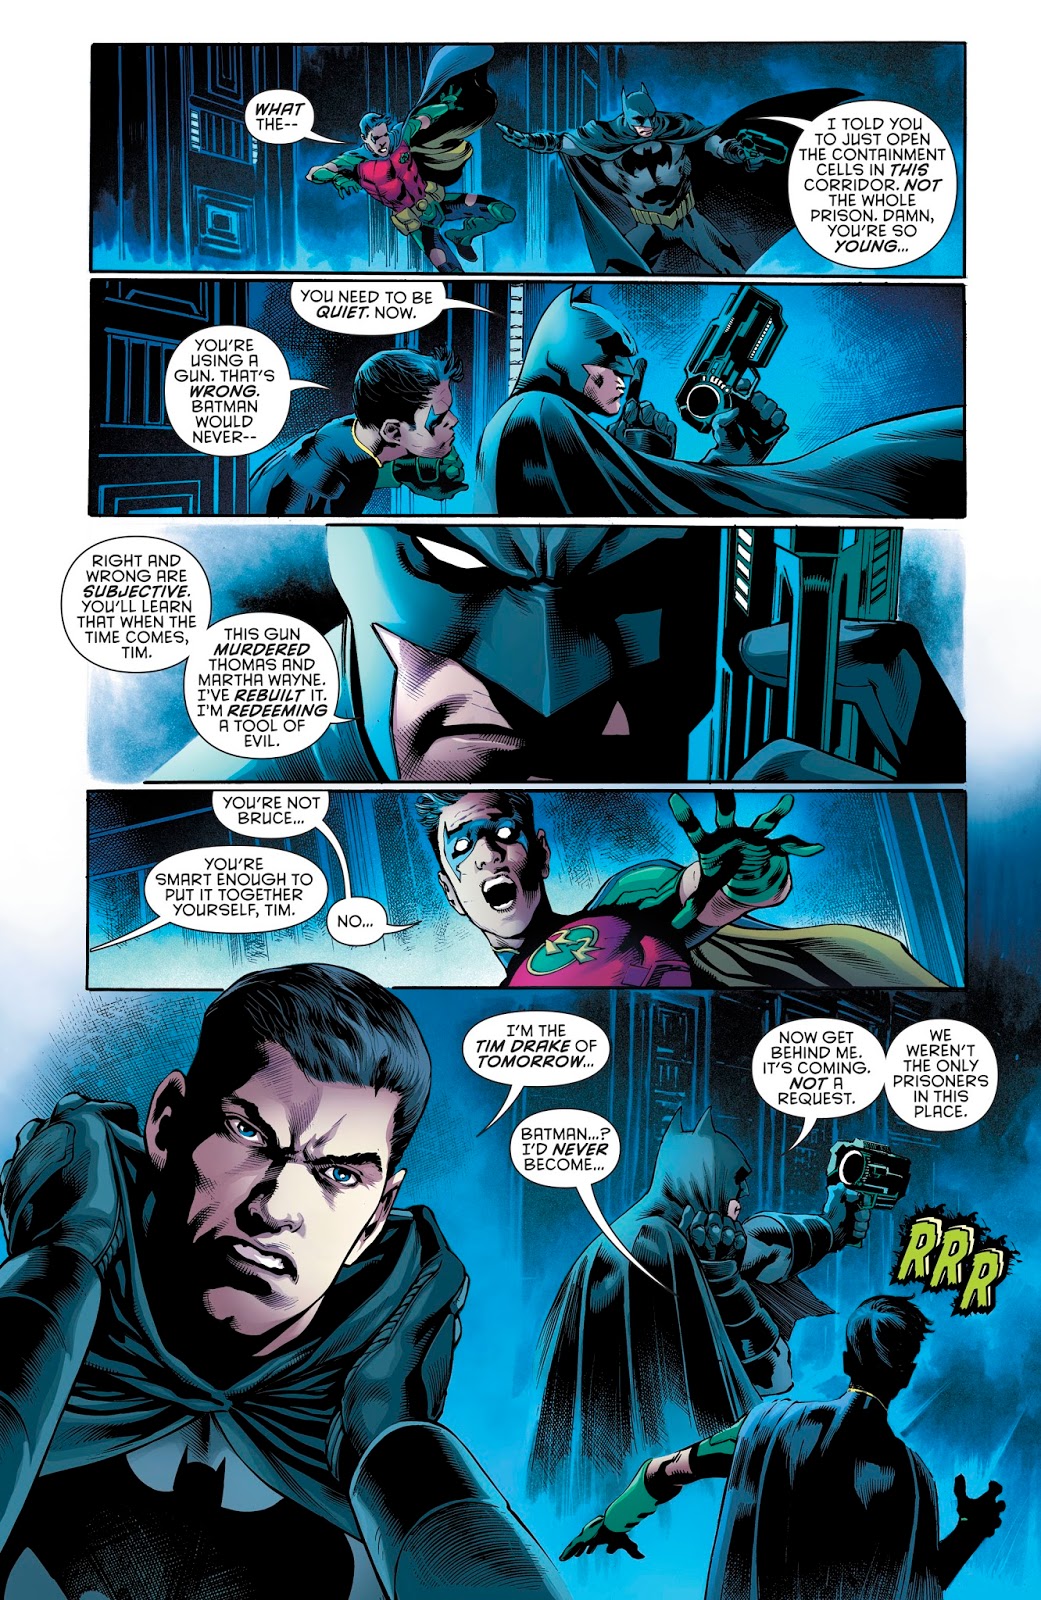 Batman And Red Robin (Detective Comics #965)